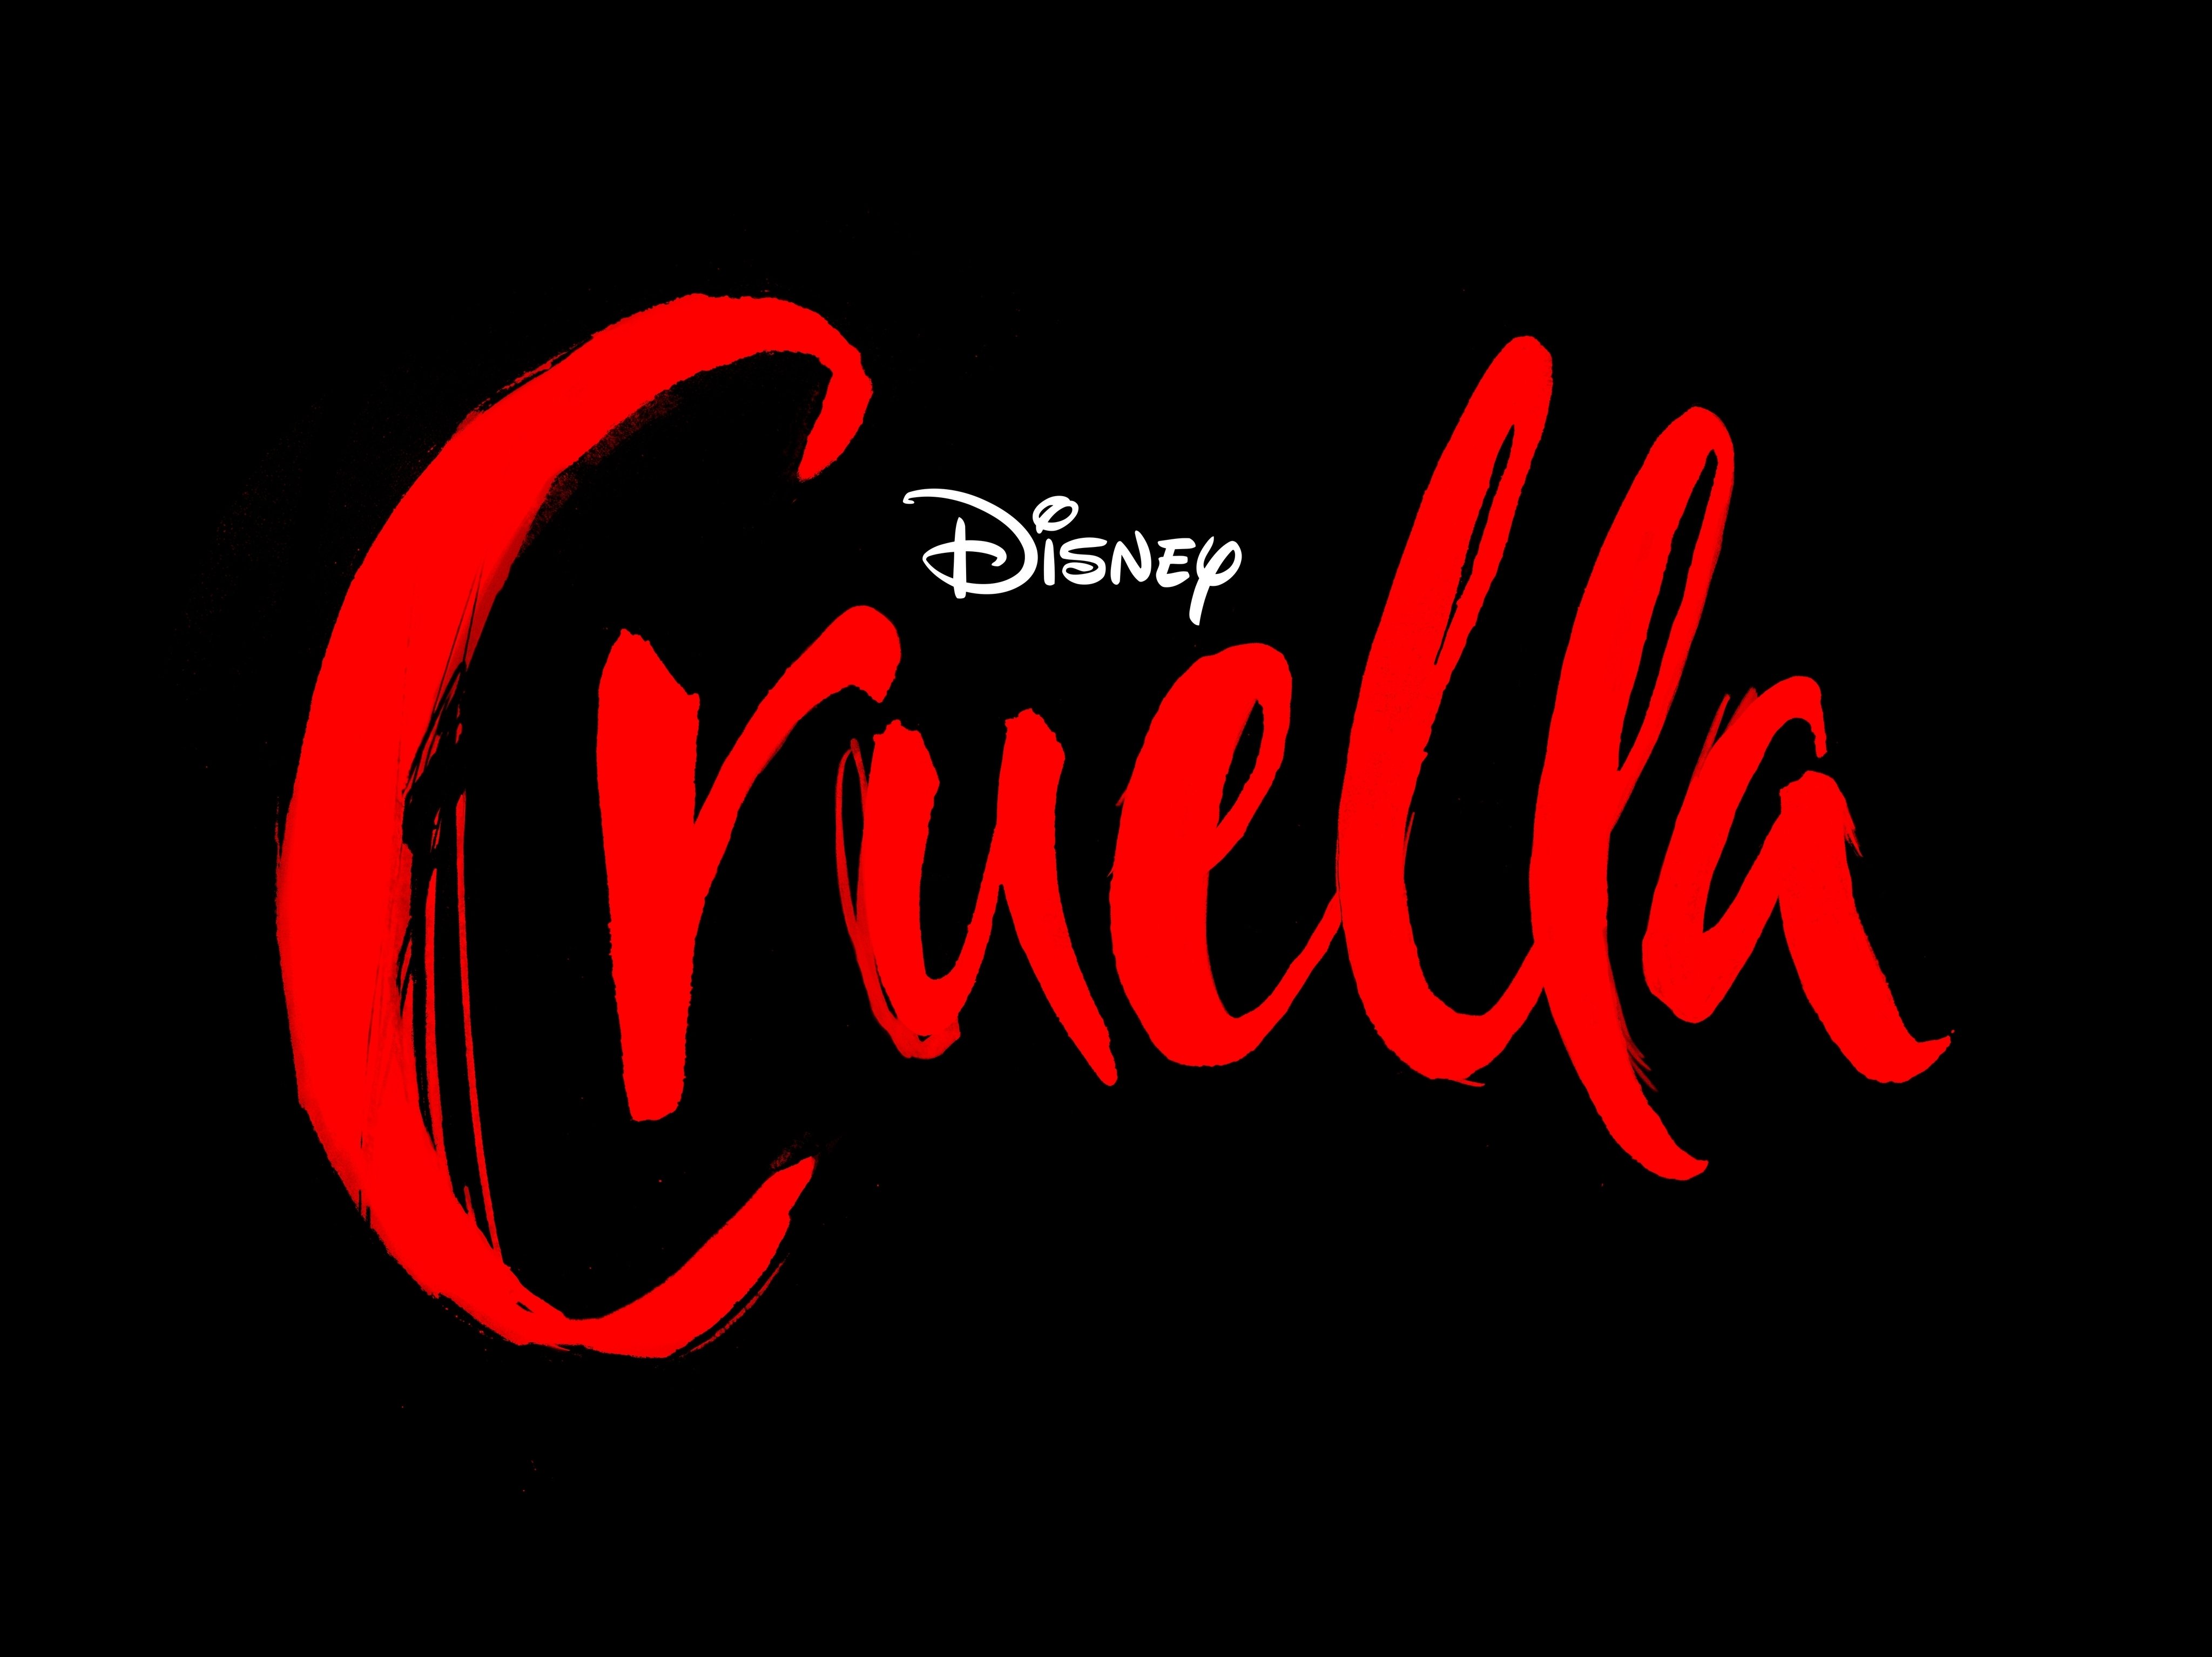 Cruella movie logo